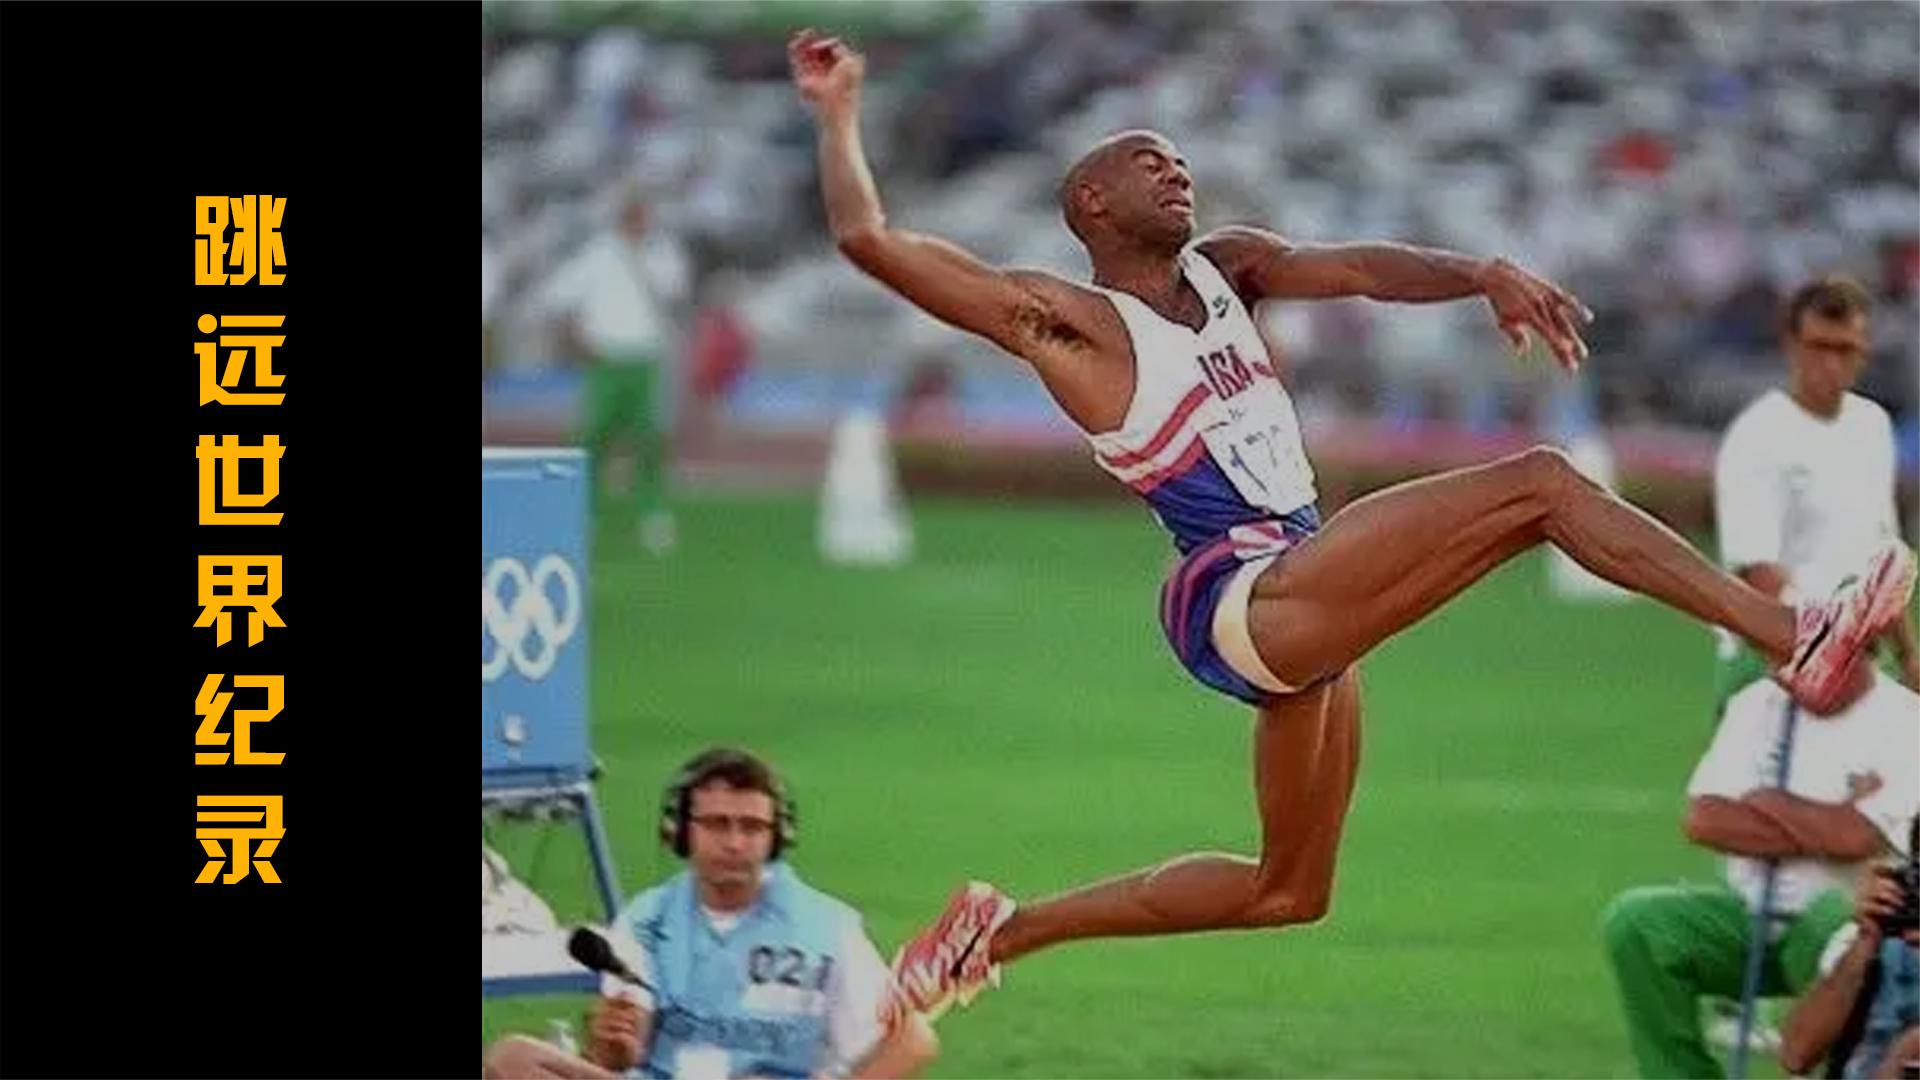 1991年迈克·鲍威尔创造8米95跳远世界纪录,已经保持了31年